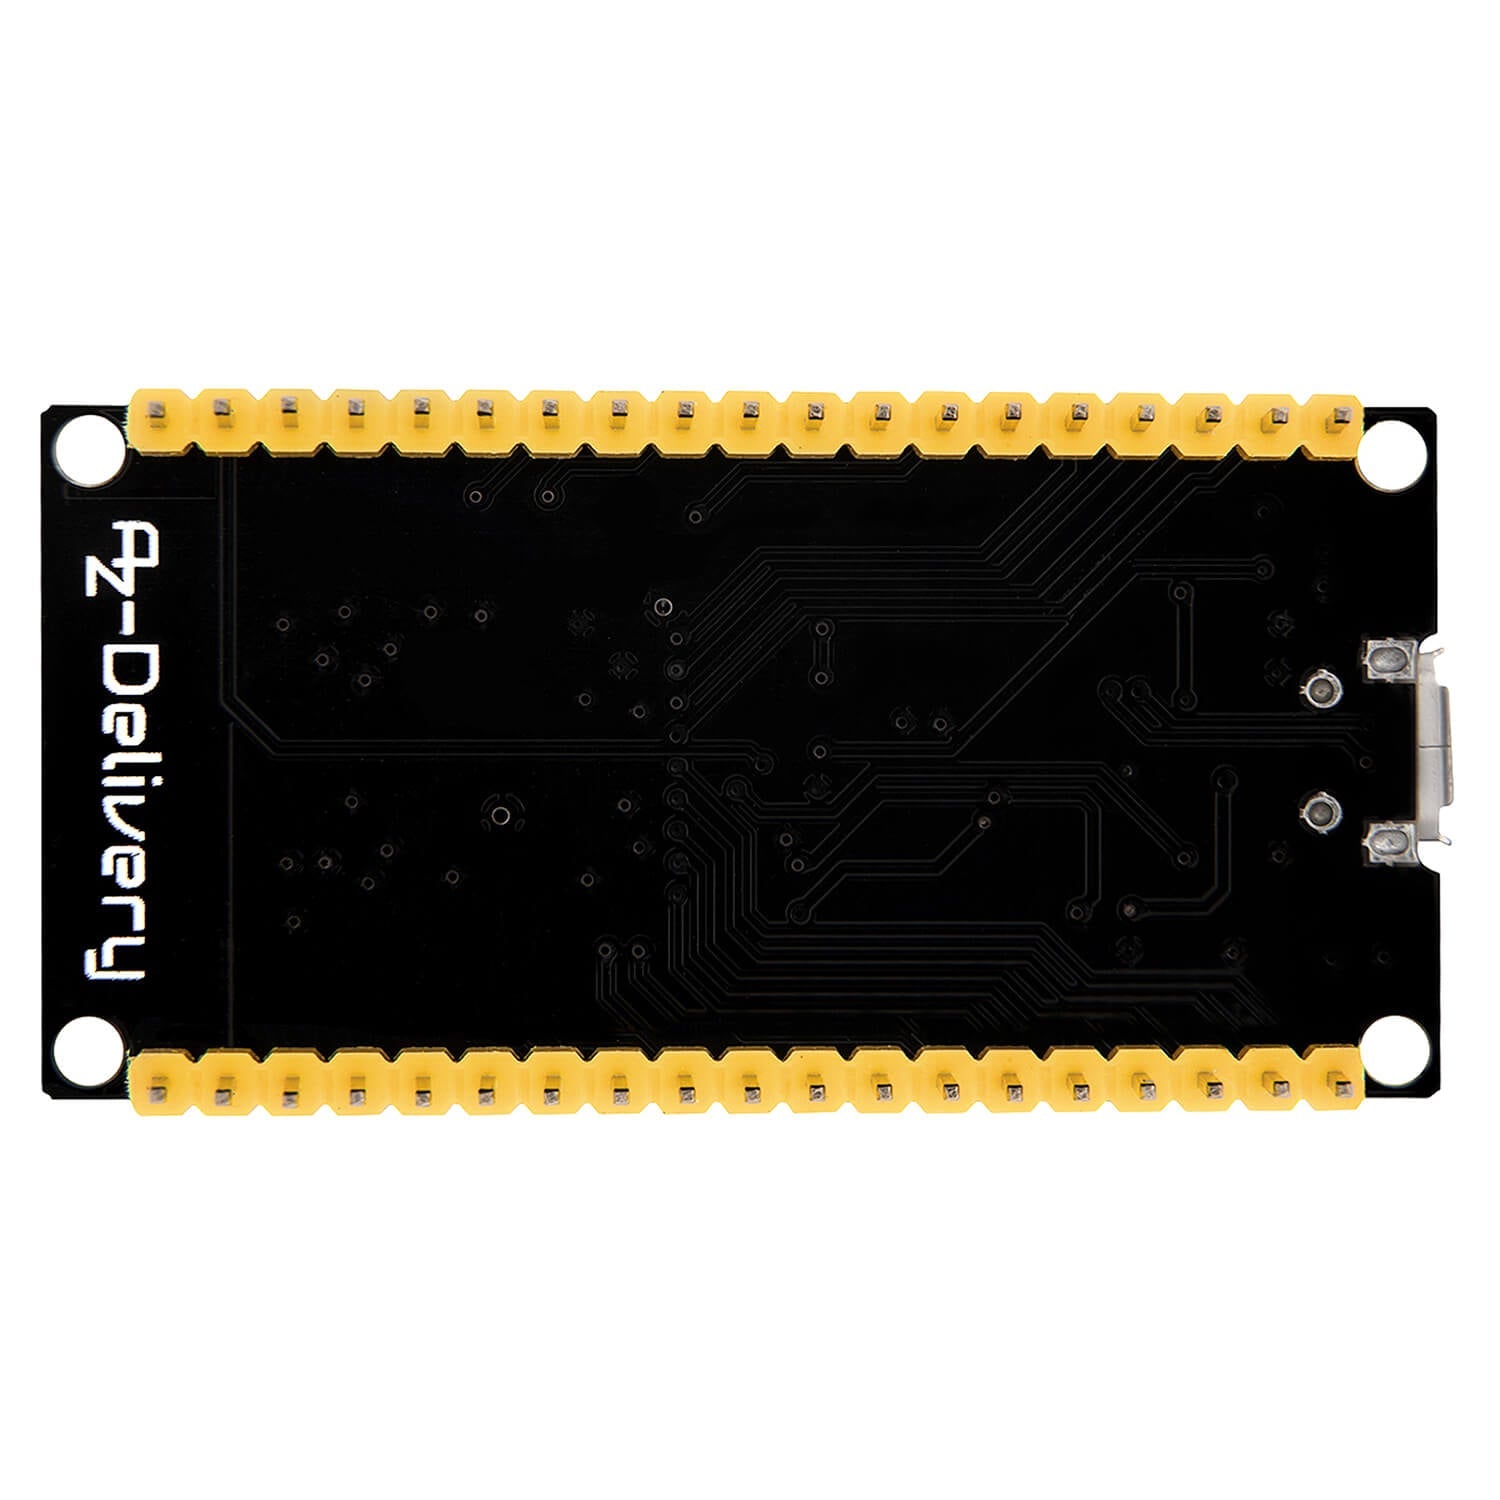 ESP32 NodeMCU Module WLAN WiFi Development Board mit CP2102 (Nachfolgermodell zum ESP8266) kompatibel mit Arduino - AZ-Delivery